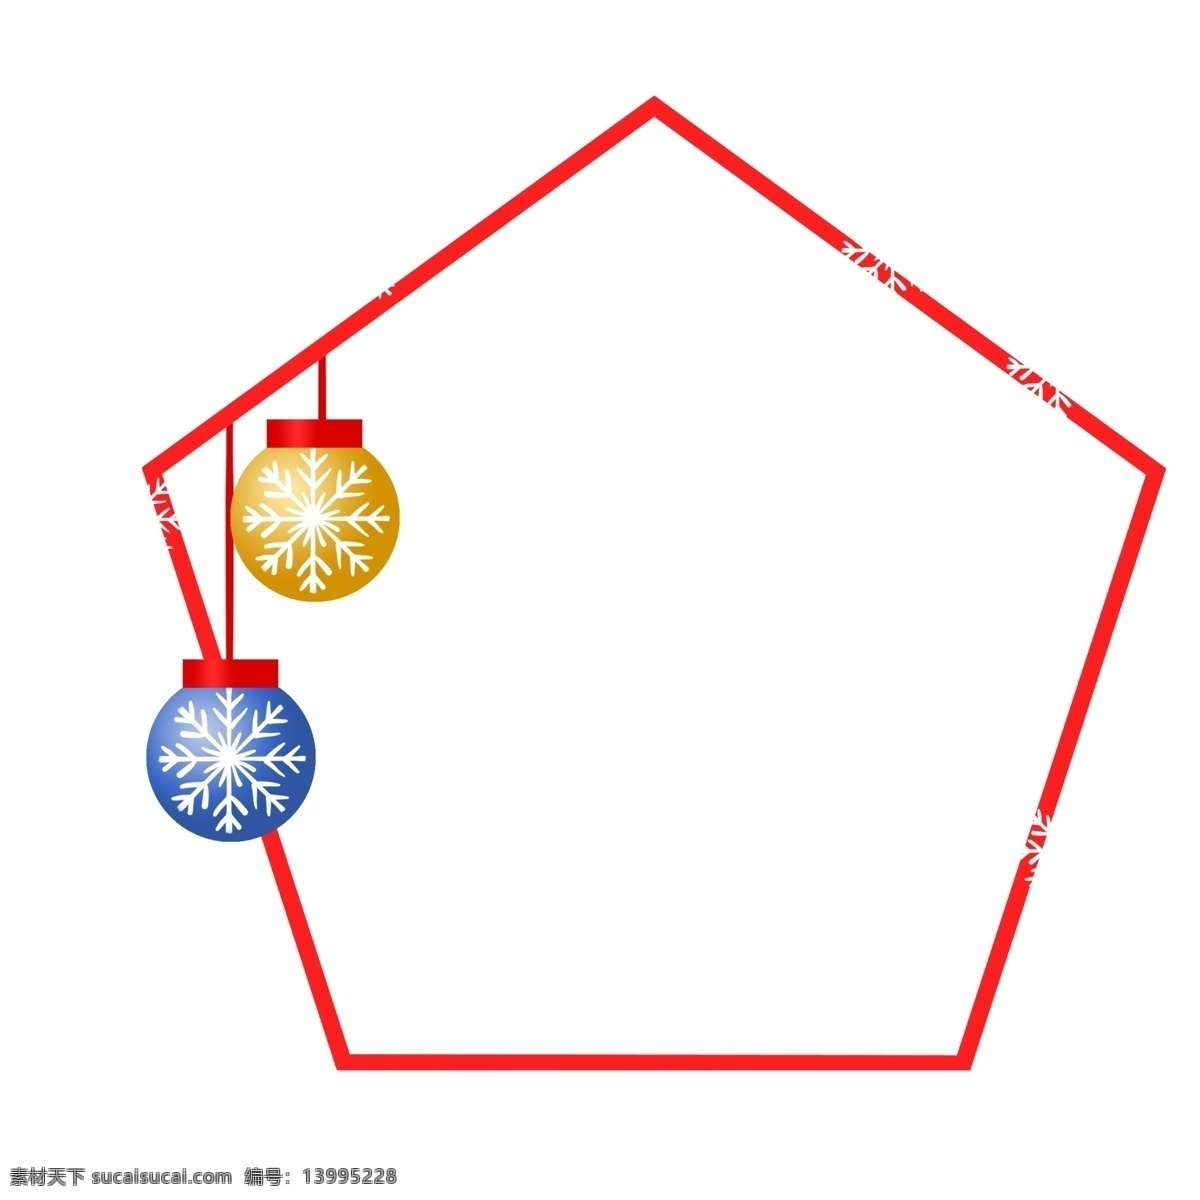 圣诞节 圣诞球 边框 装饰 漂亮的边框 边框插画 可爱的边框 边框装饰 插画 红色的边框 黄色的圣诞球